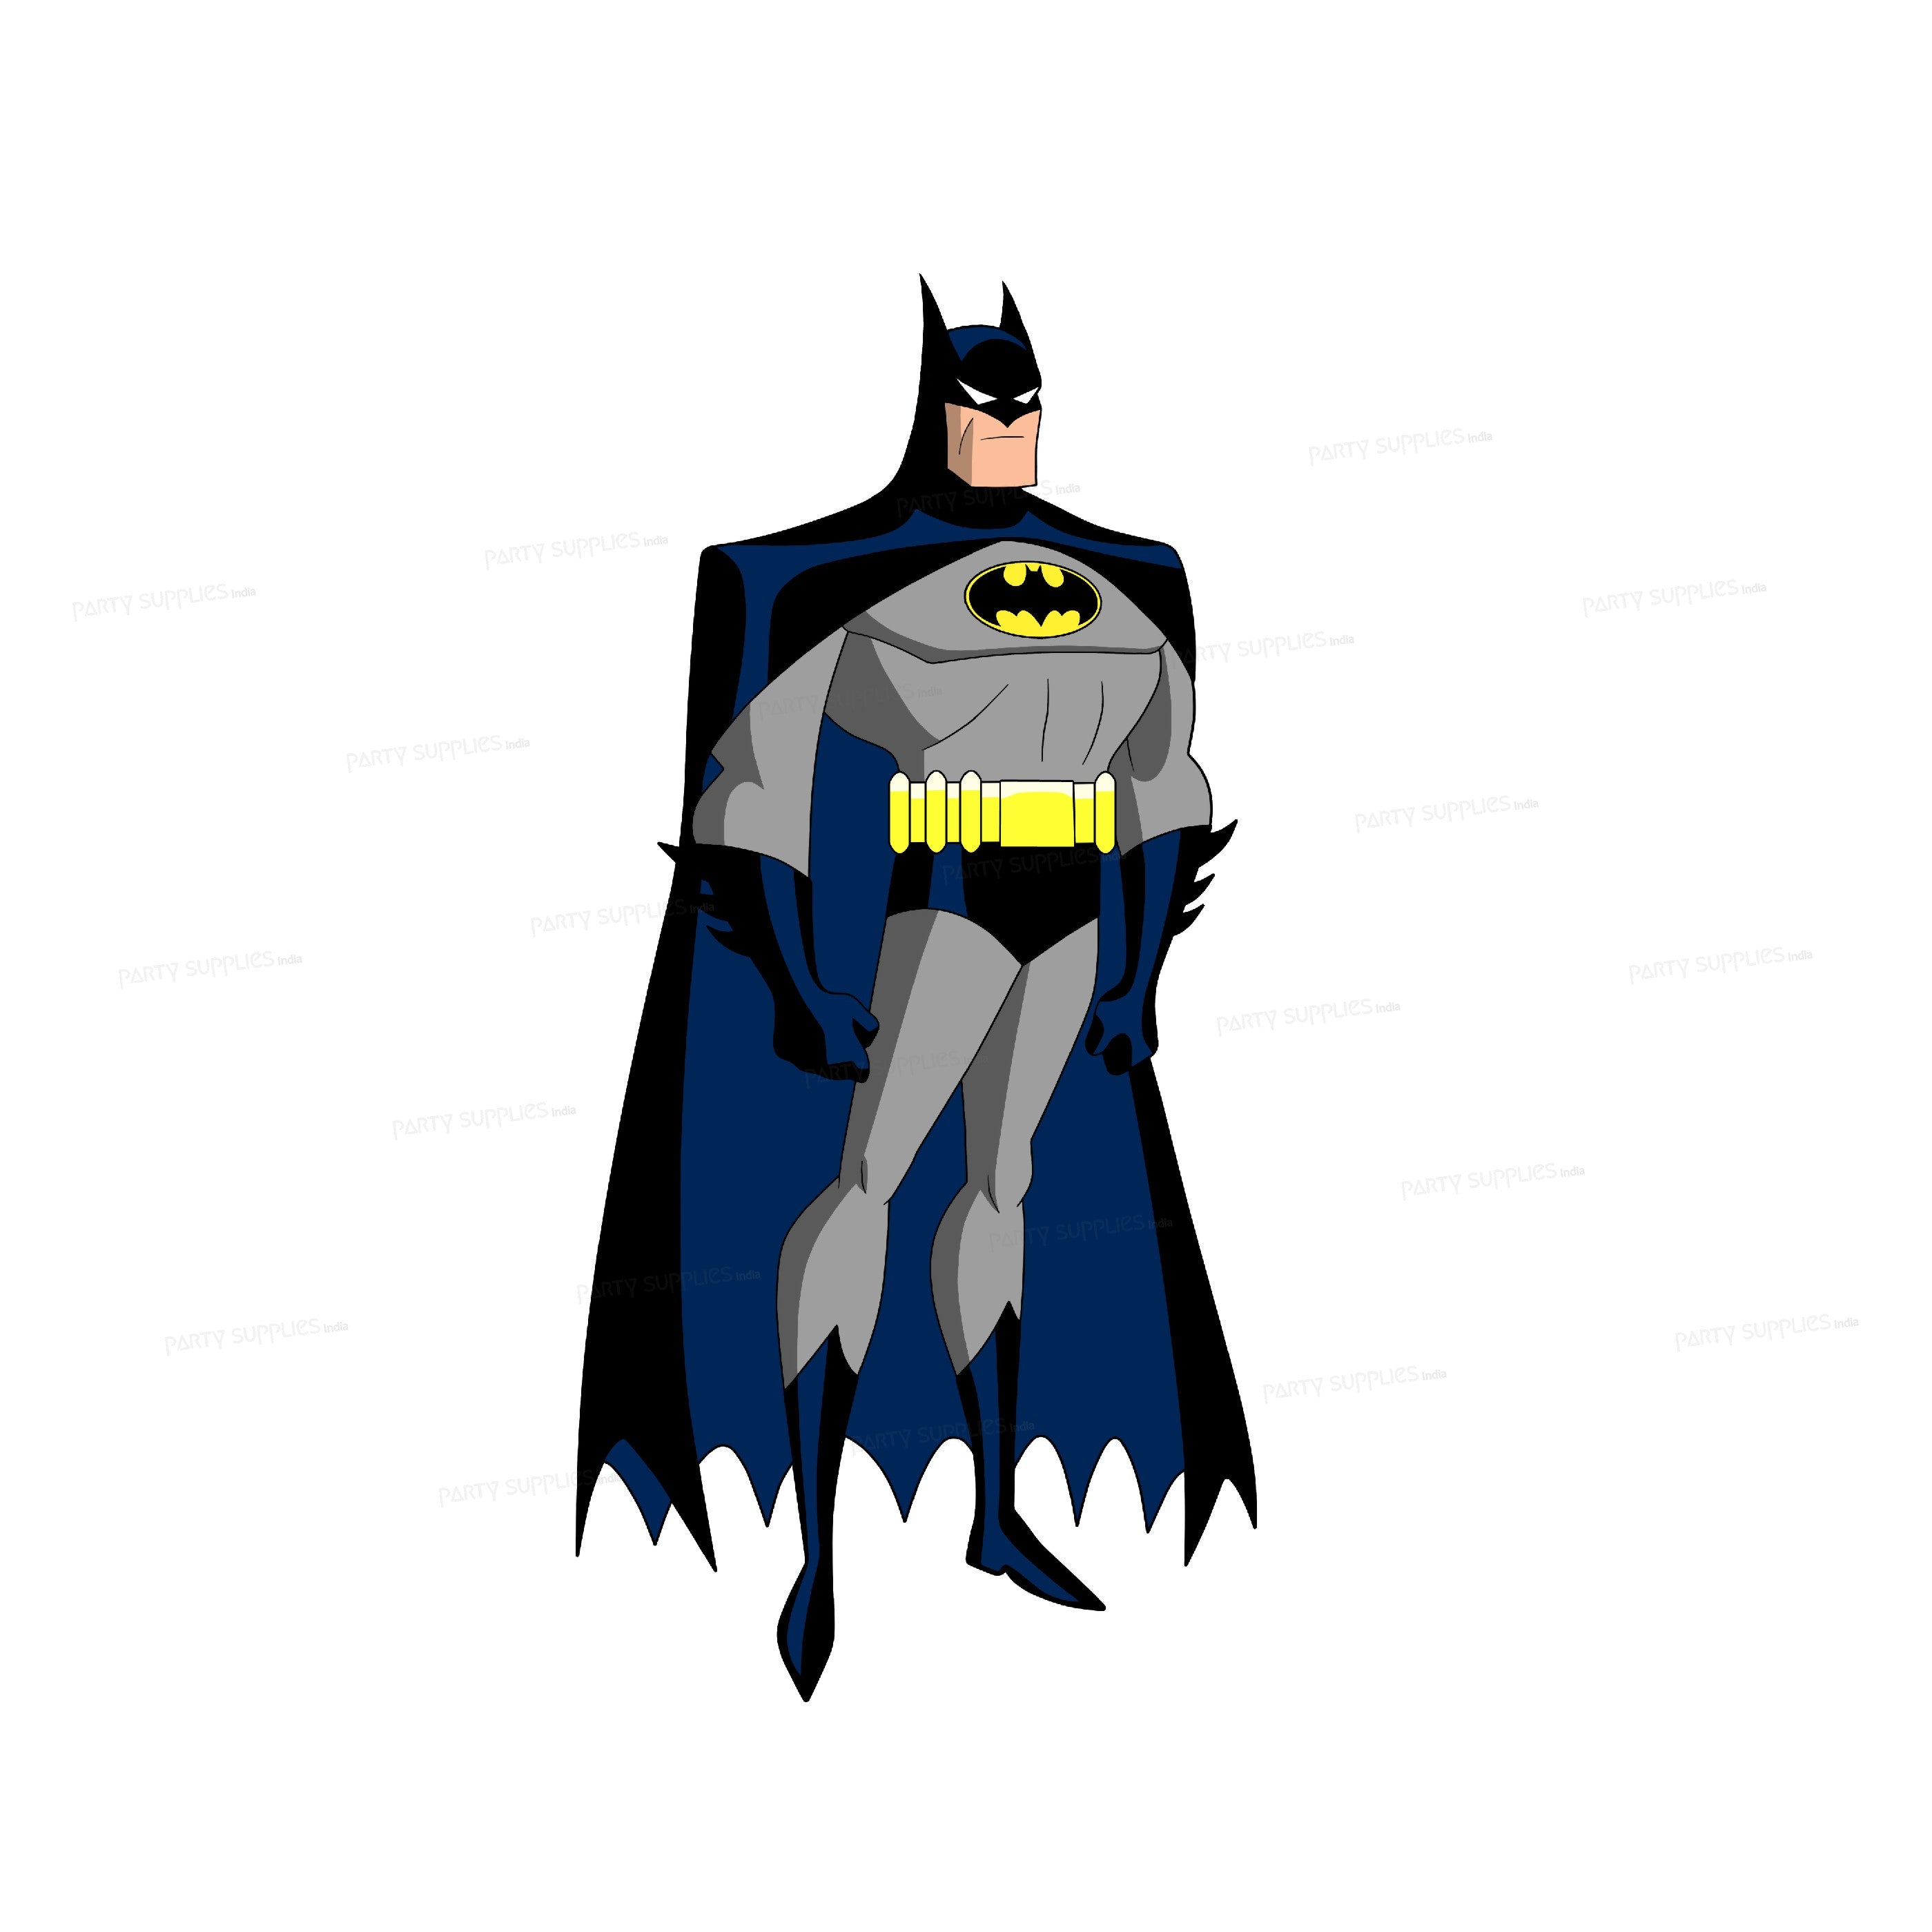 PSI Batman Theme Cutout - 09